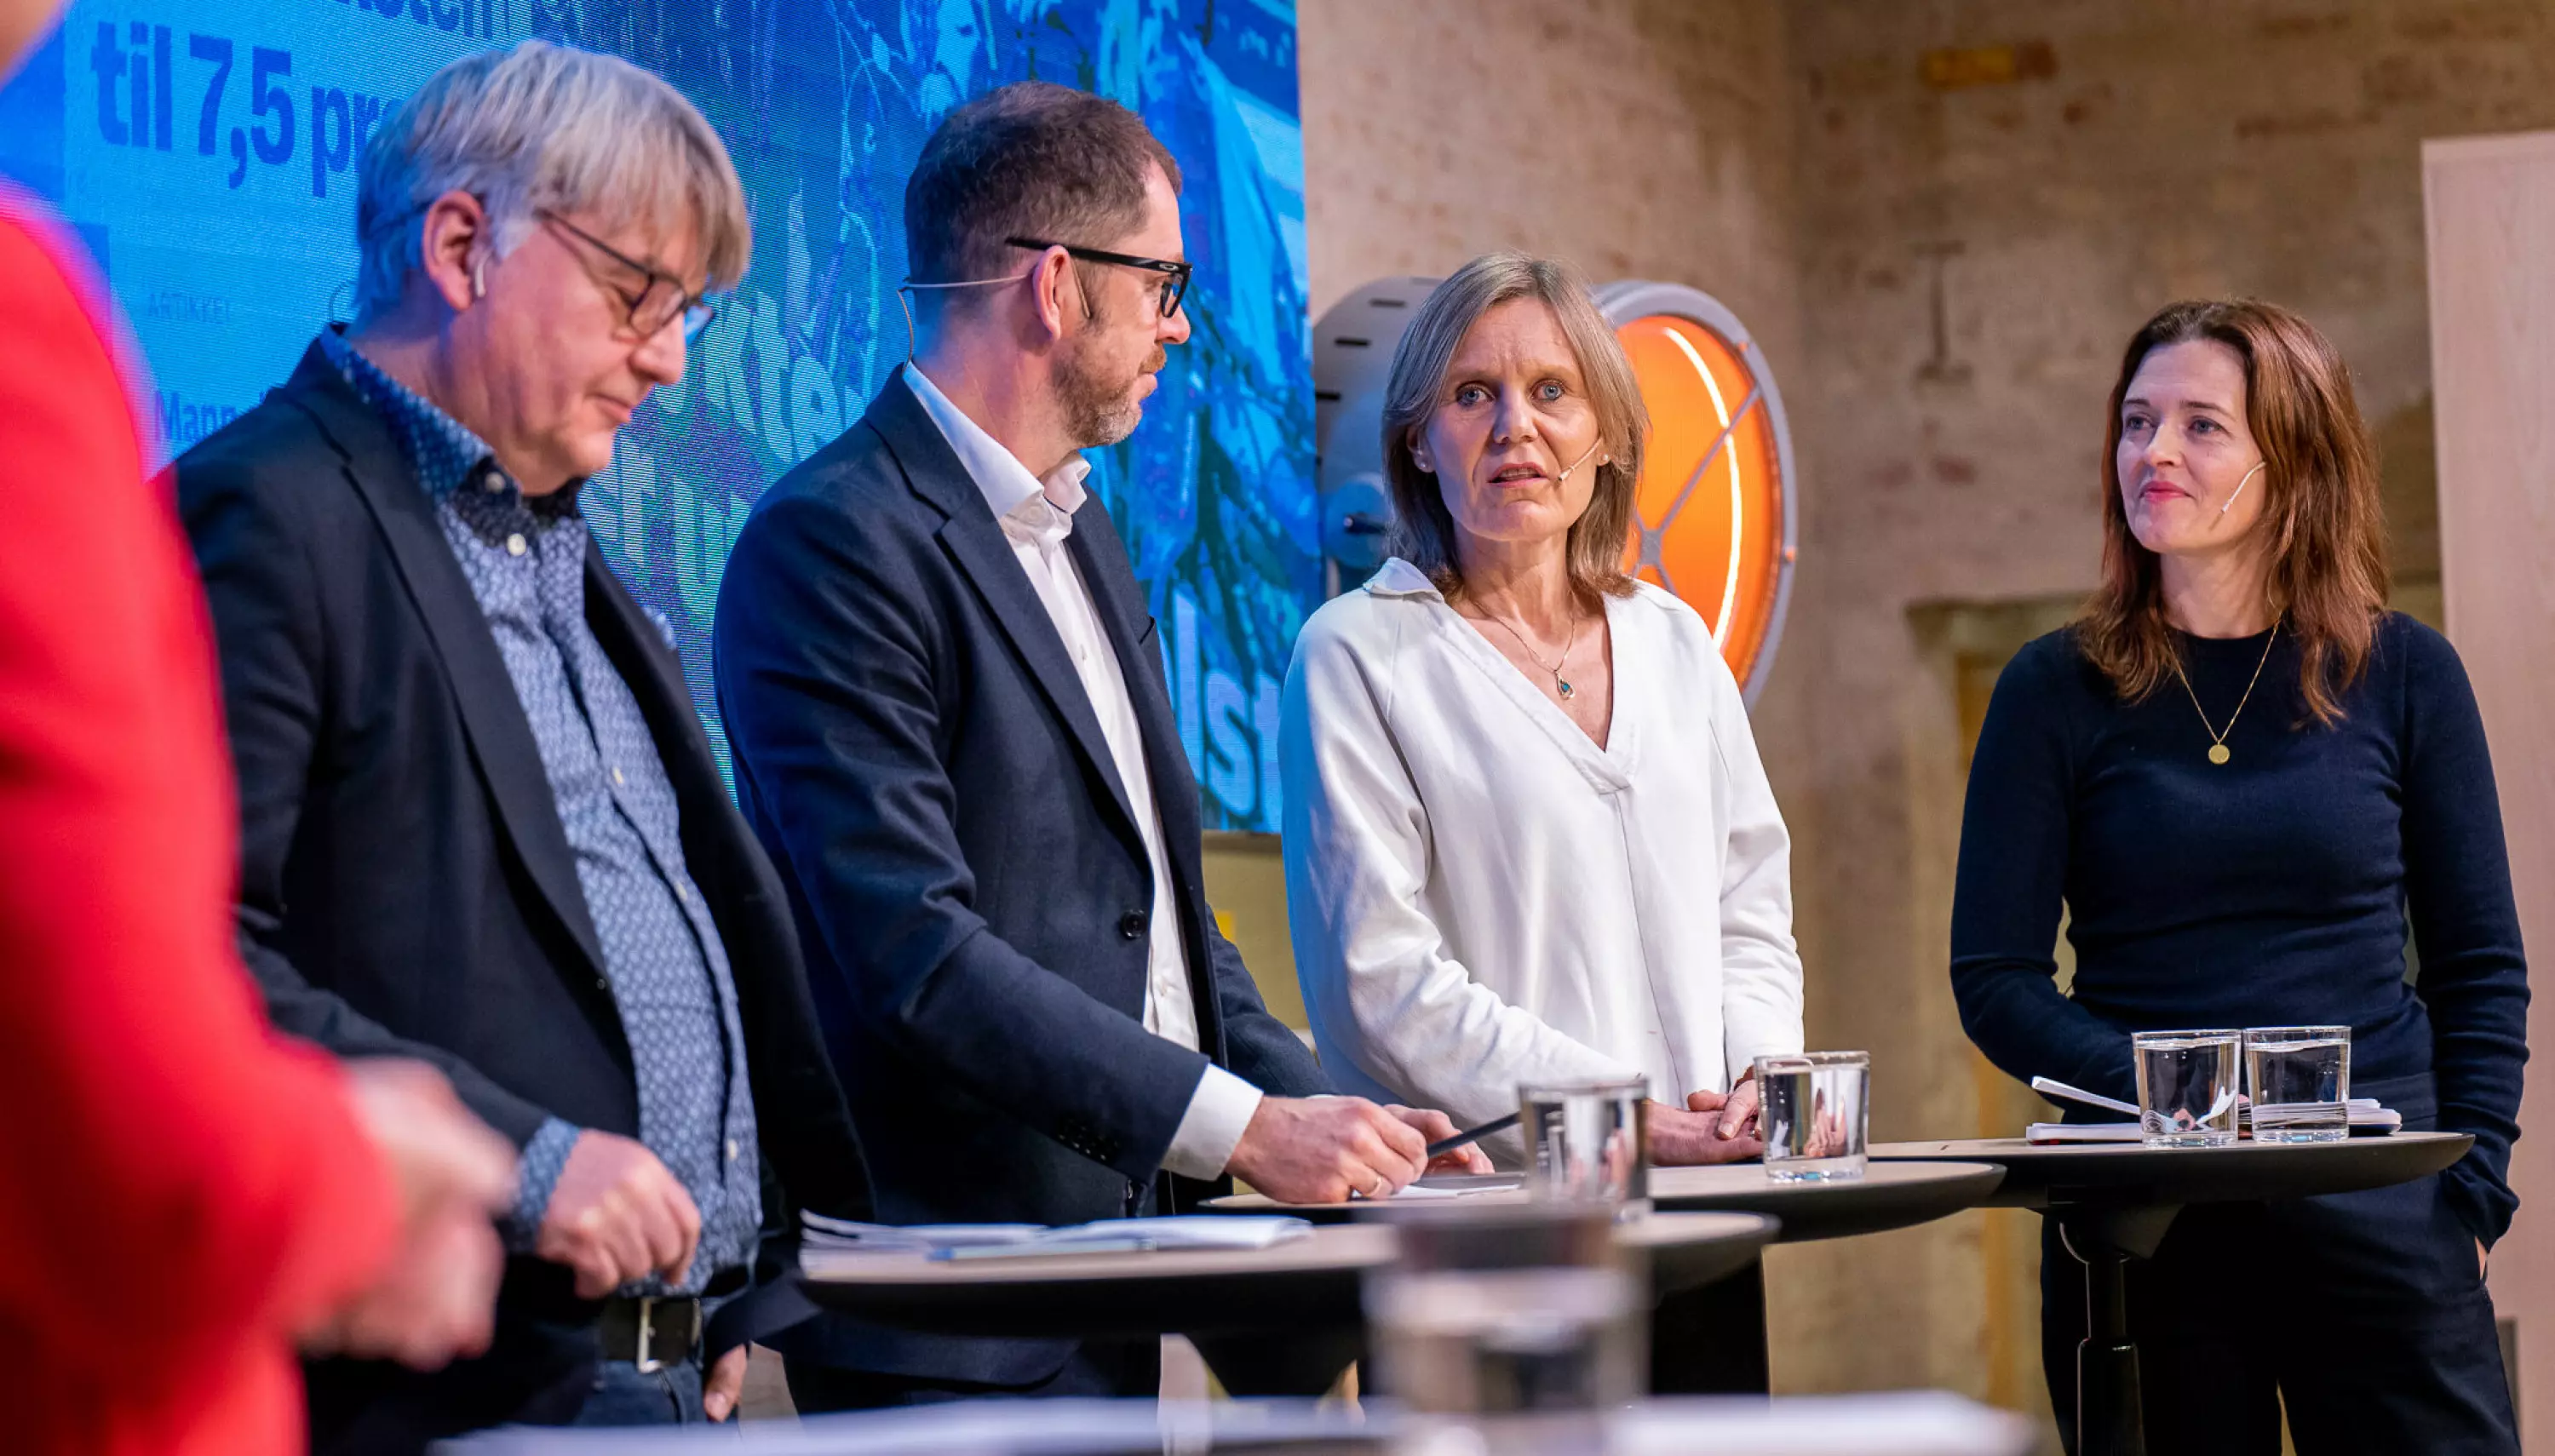 Erik Sønstelie, Bjørn Kristoffer Bore, Helje Solberg og Tora Bakke Håndlykken i debatt på Pressens Hus.